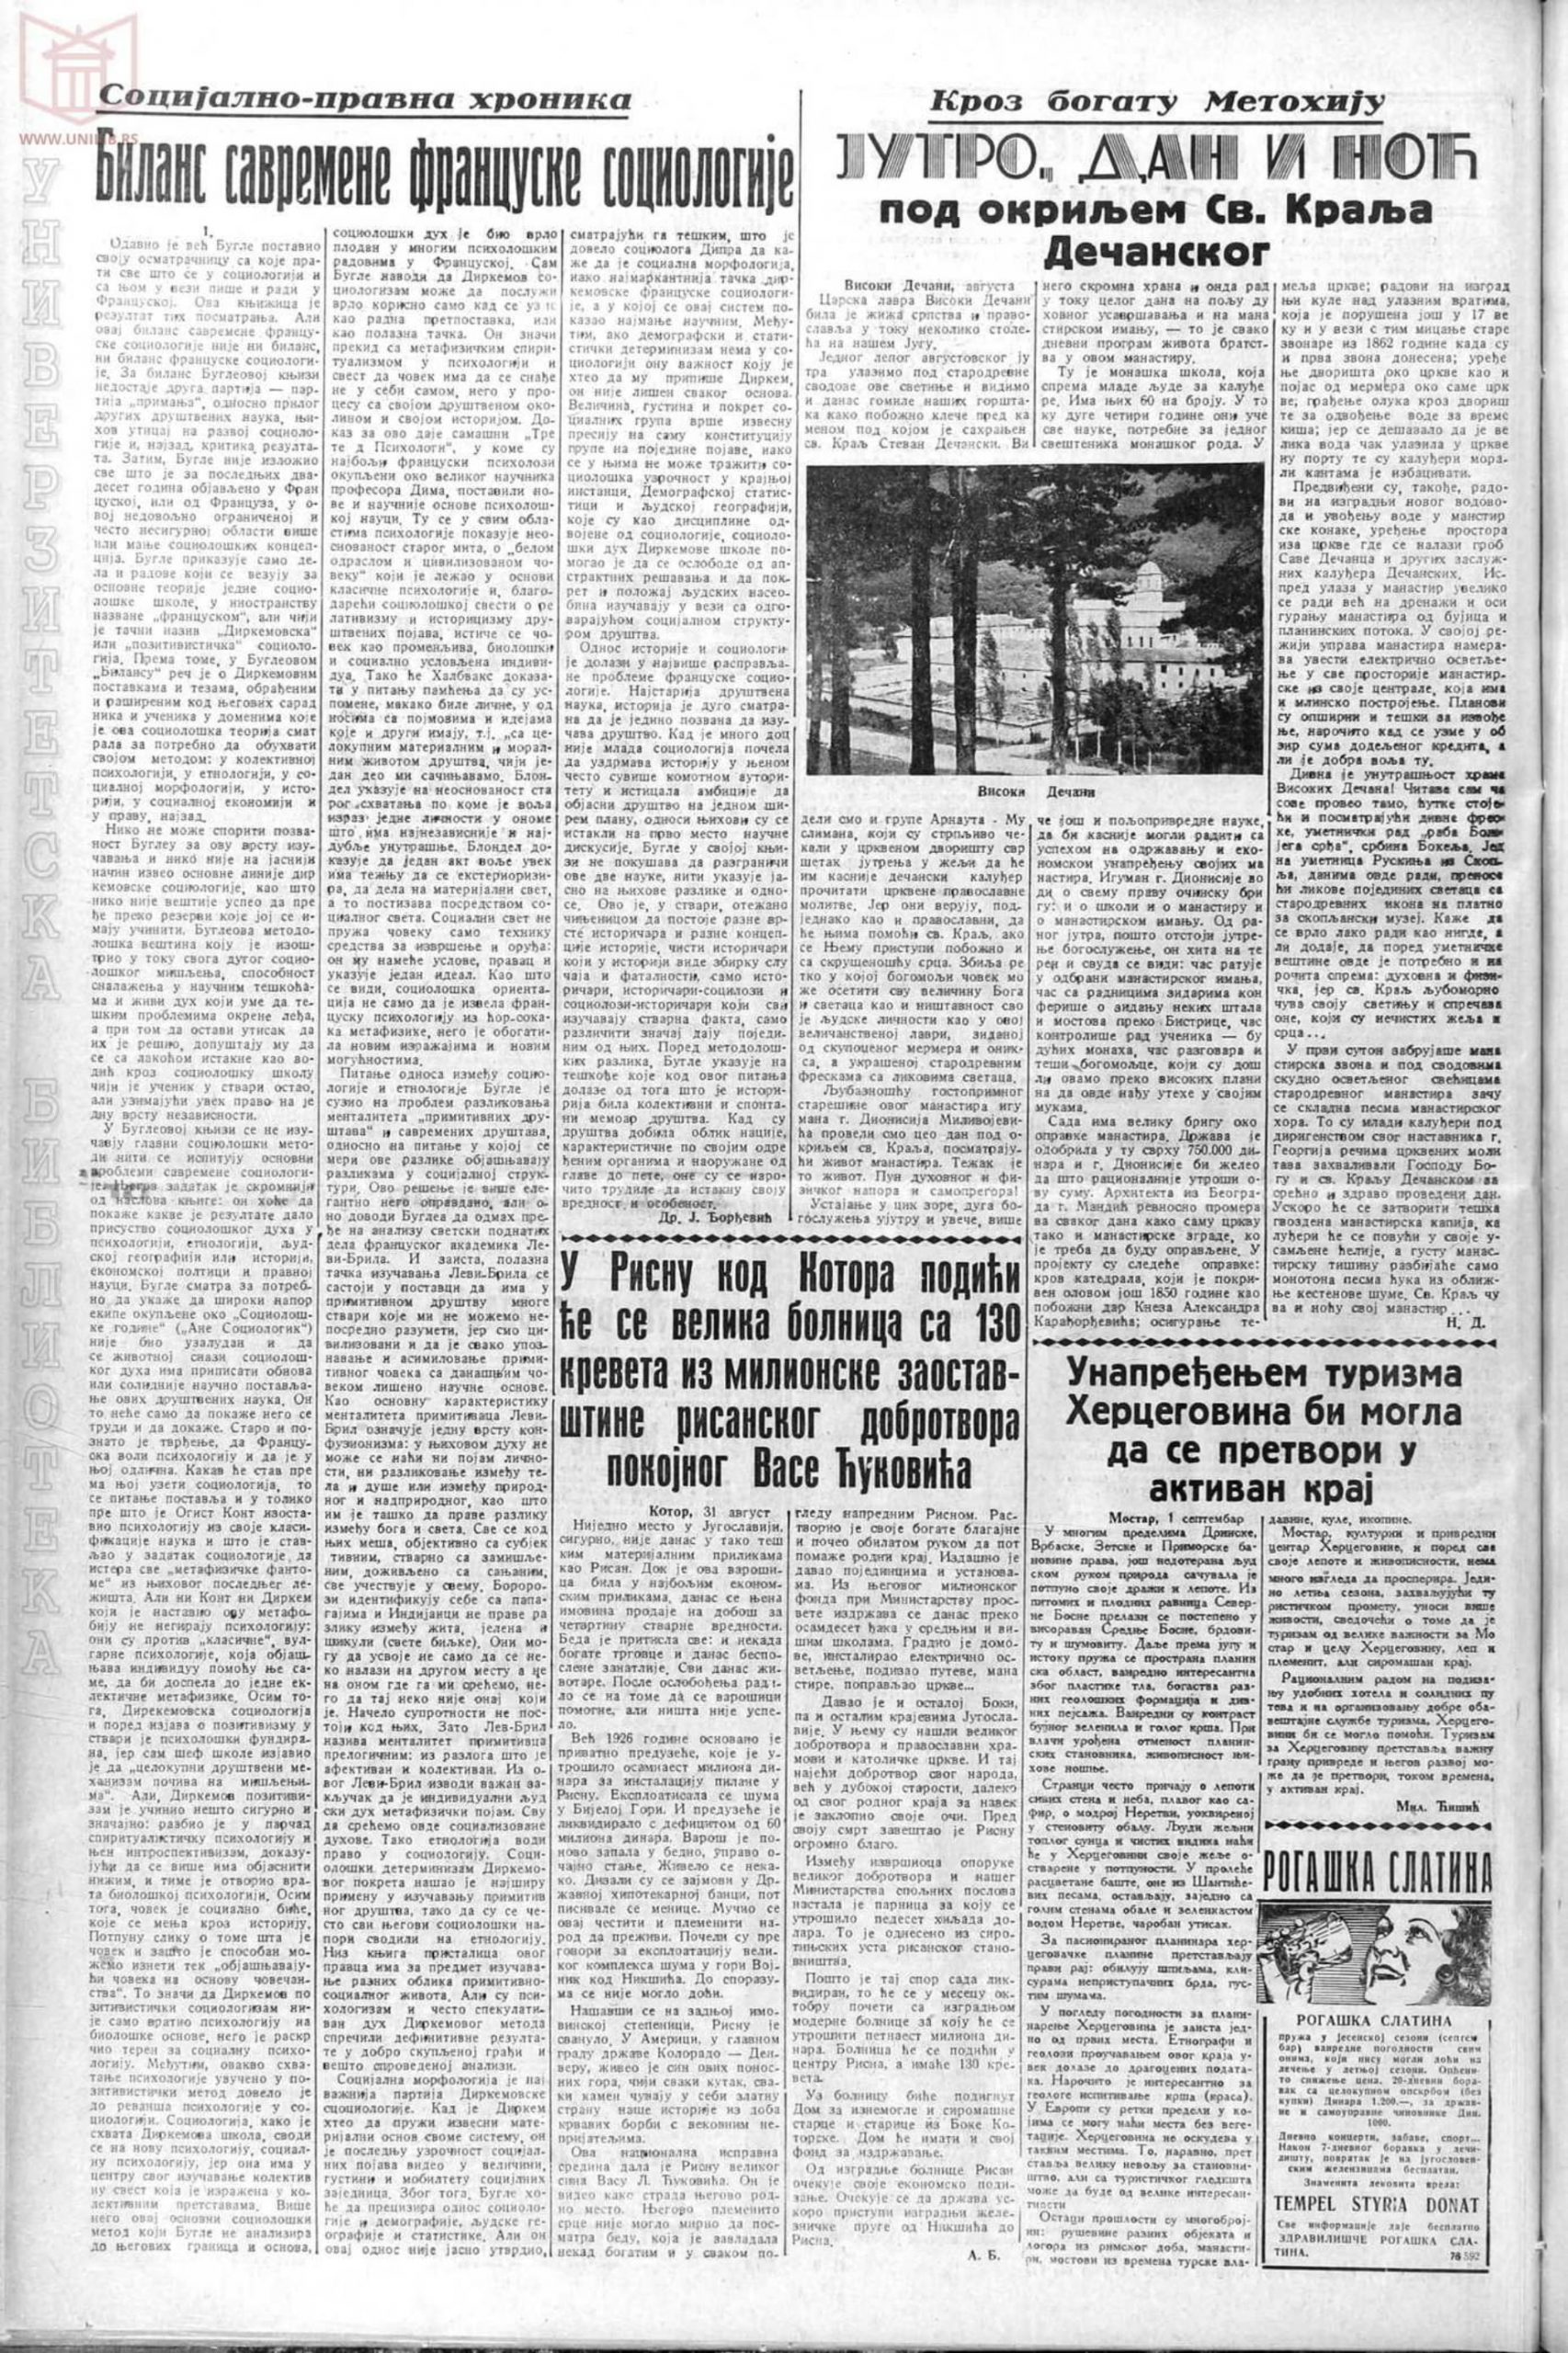 Pravda 1937-09-02 p12-1